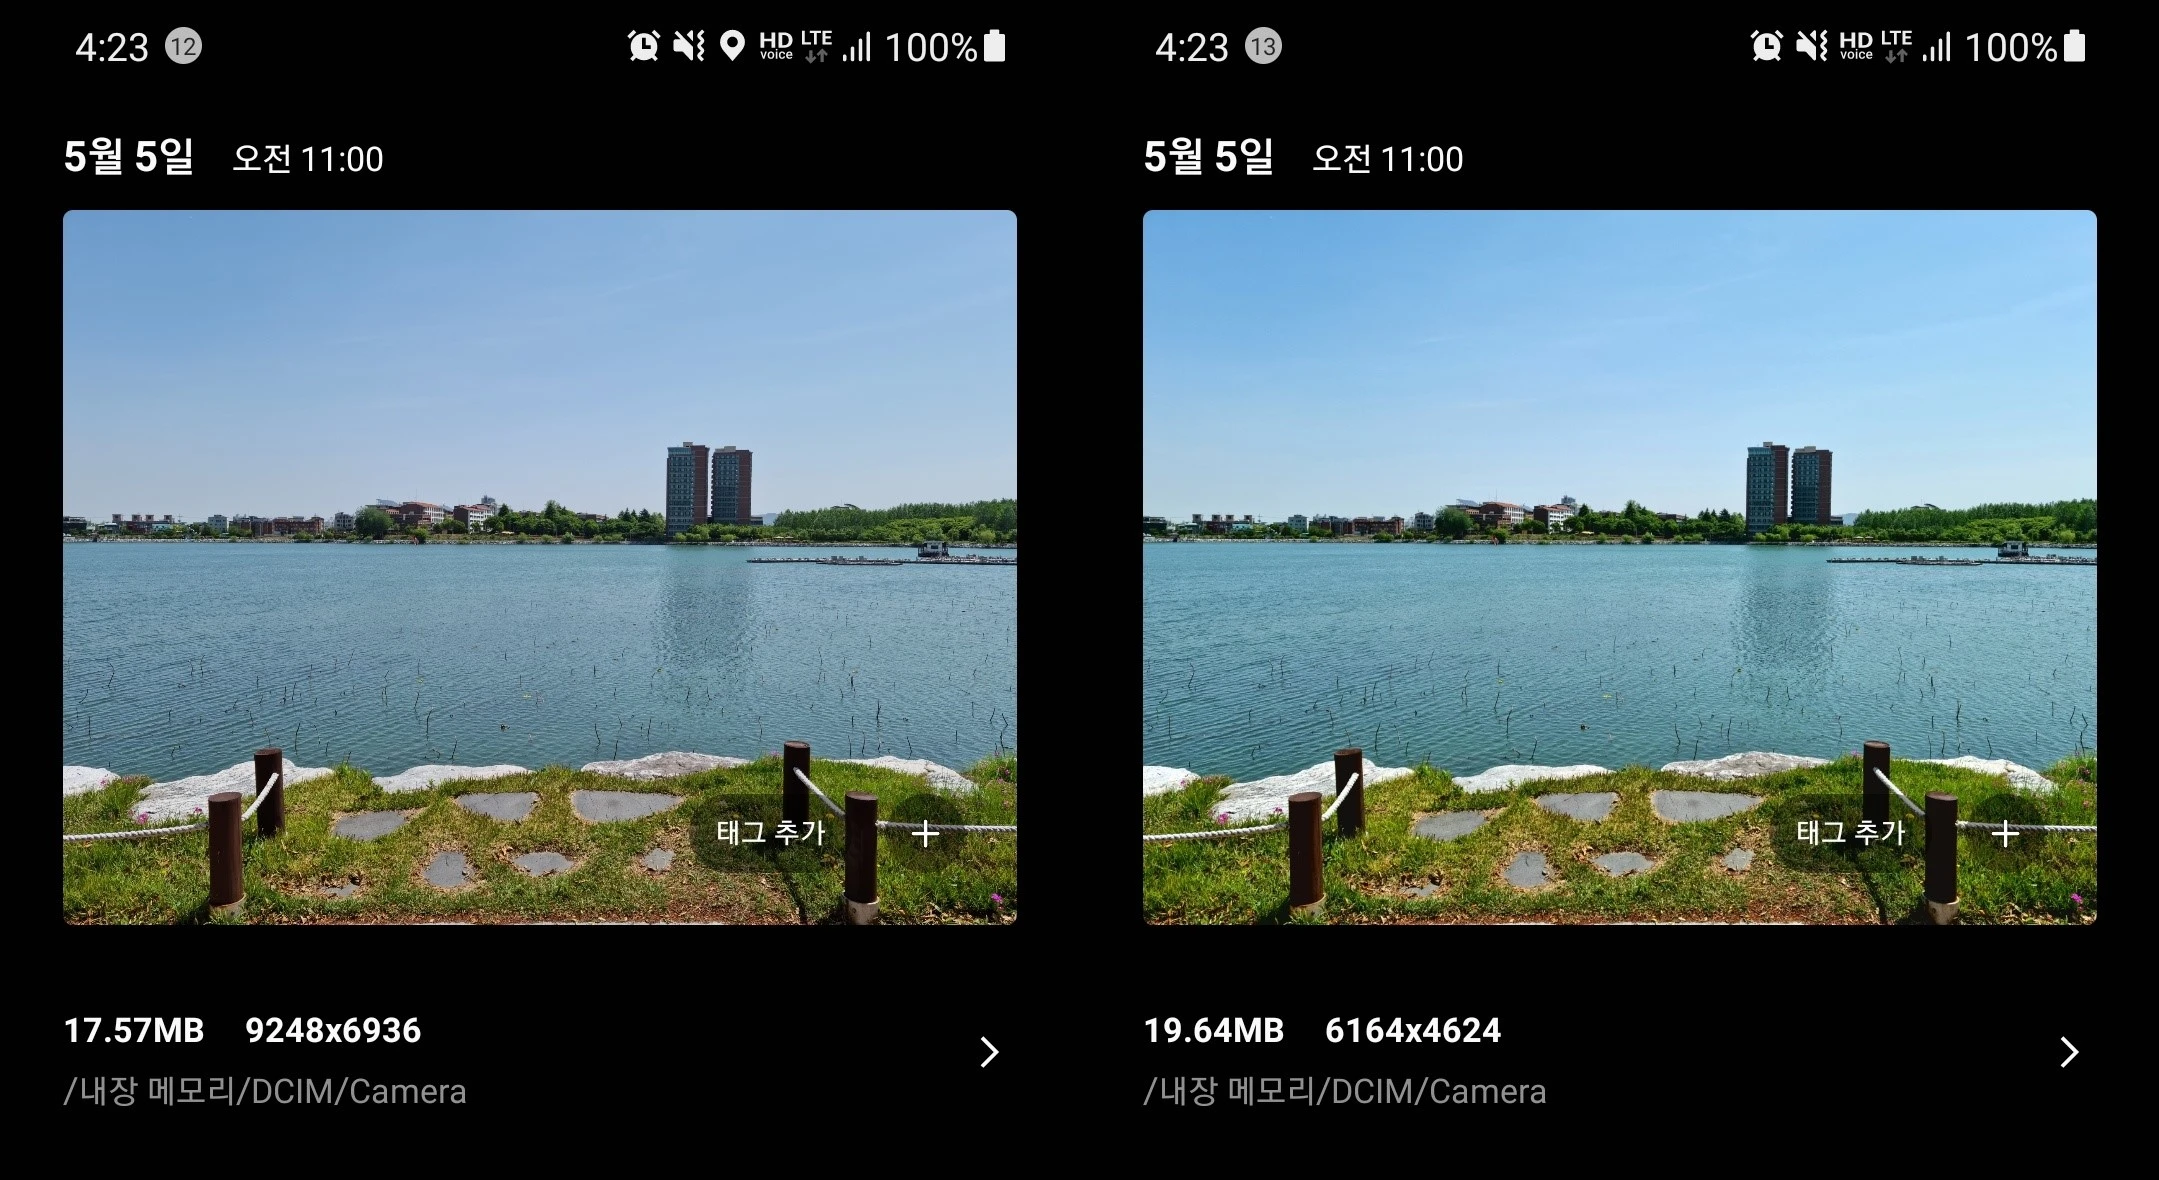 왼쪽이 6,400만 화소로 담은 원본, 오른쪽이 리마스터된 사진이다. 사진 해상도가 줄고 용량이 늘었다.